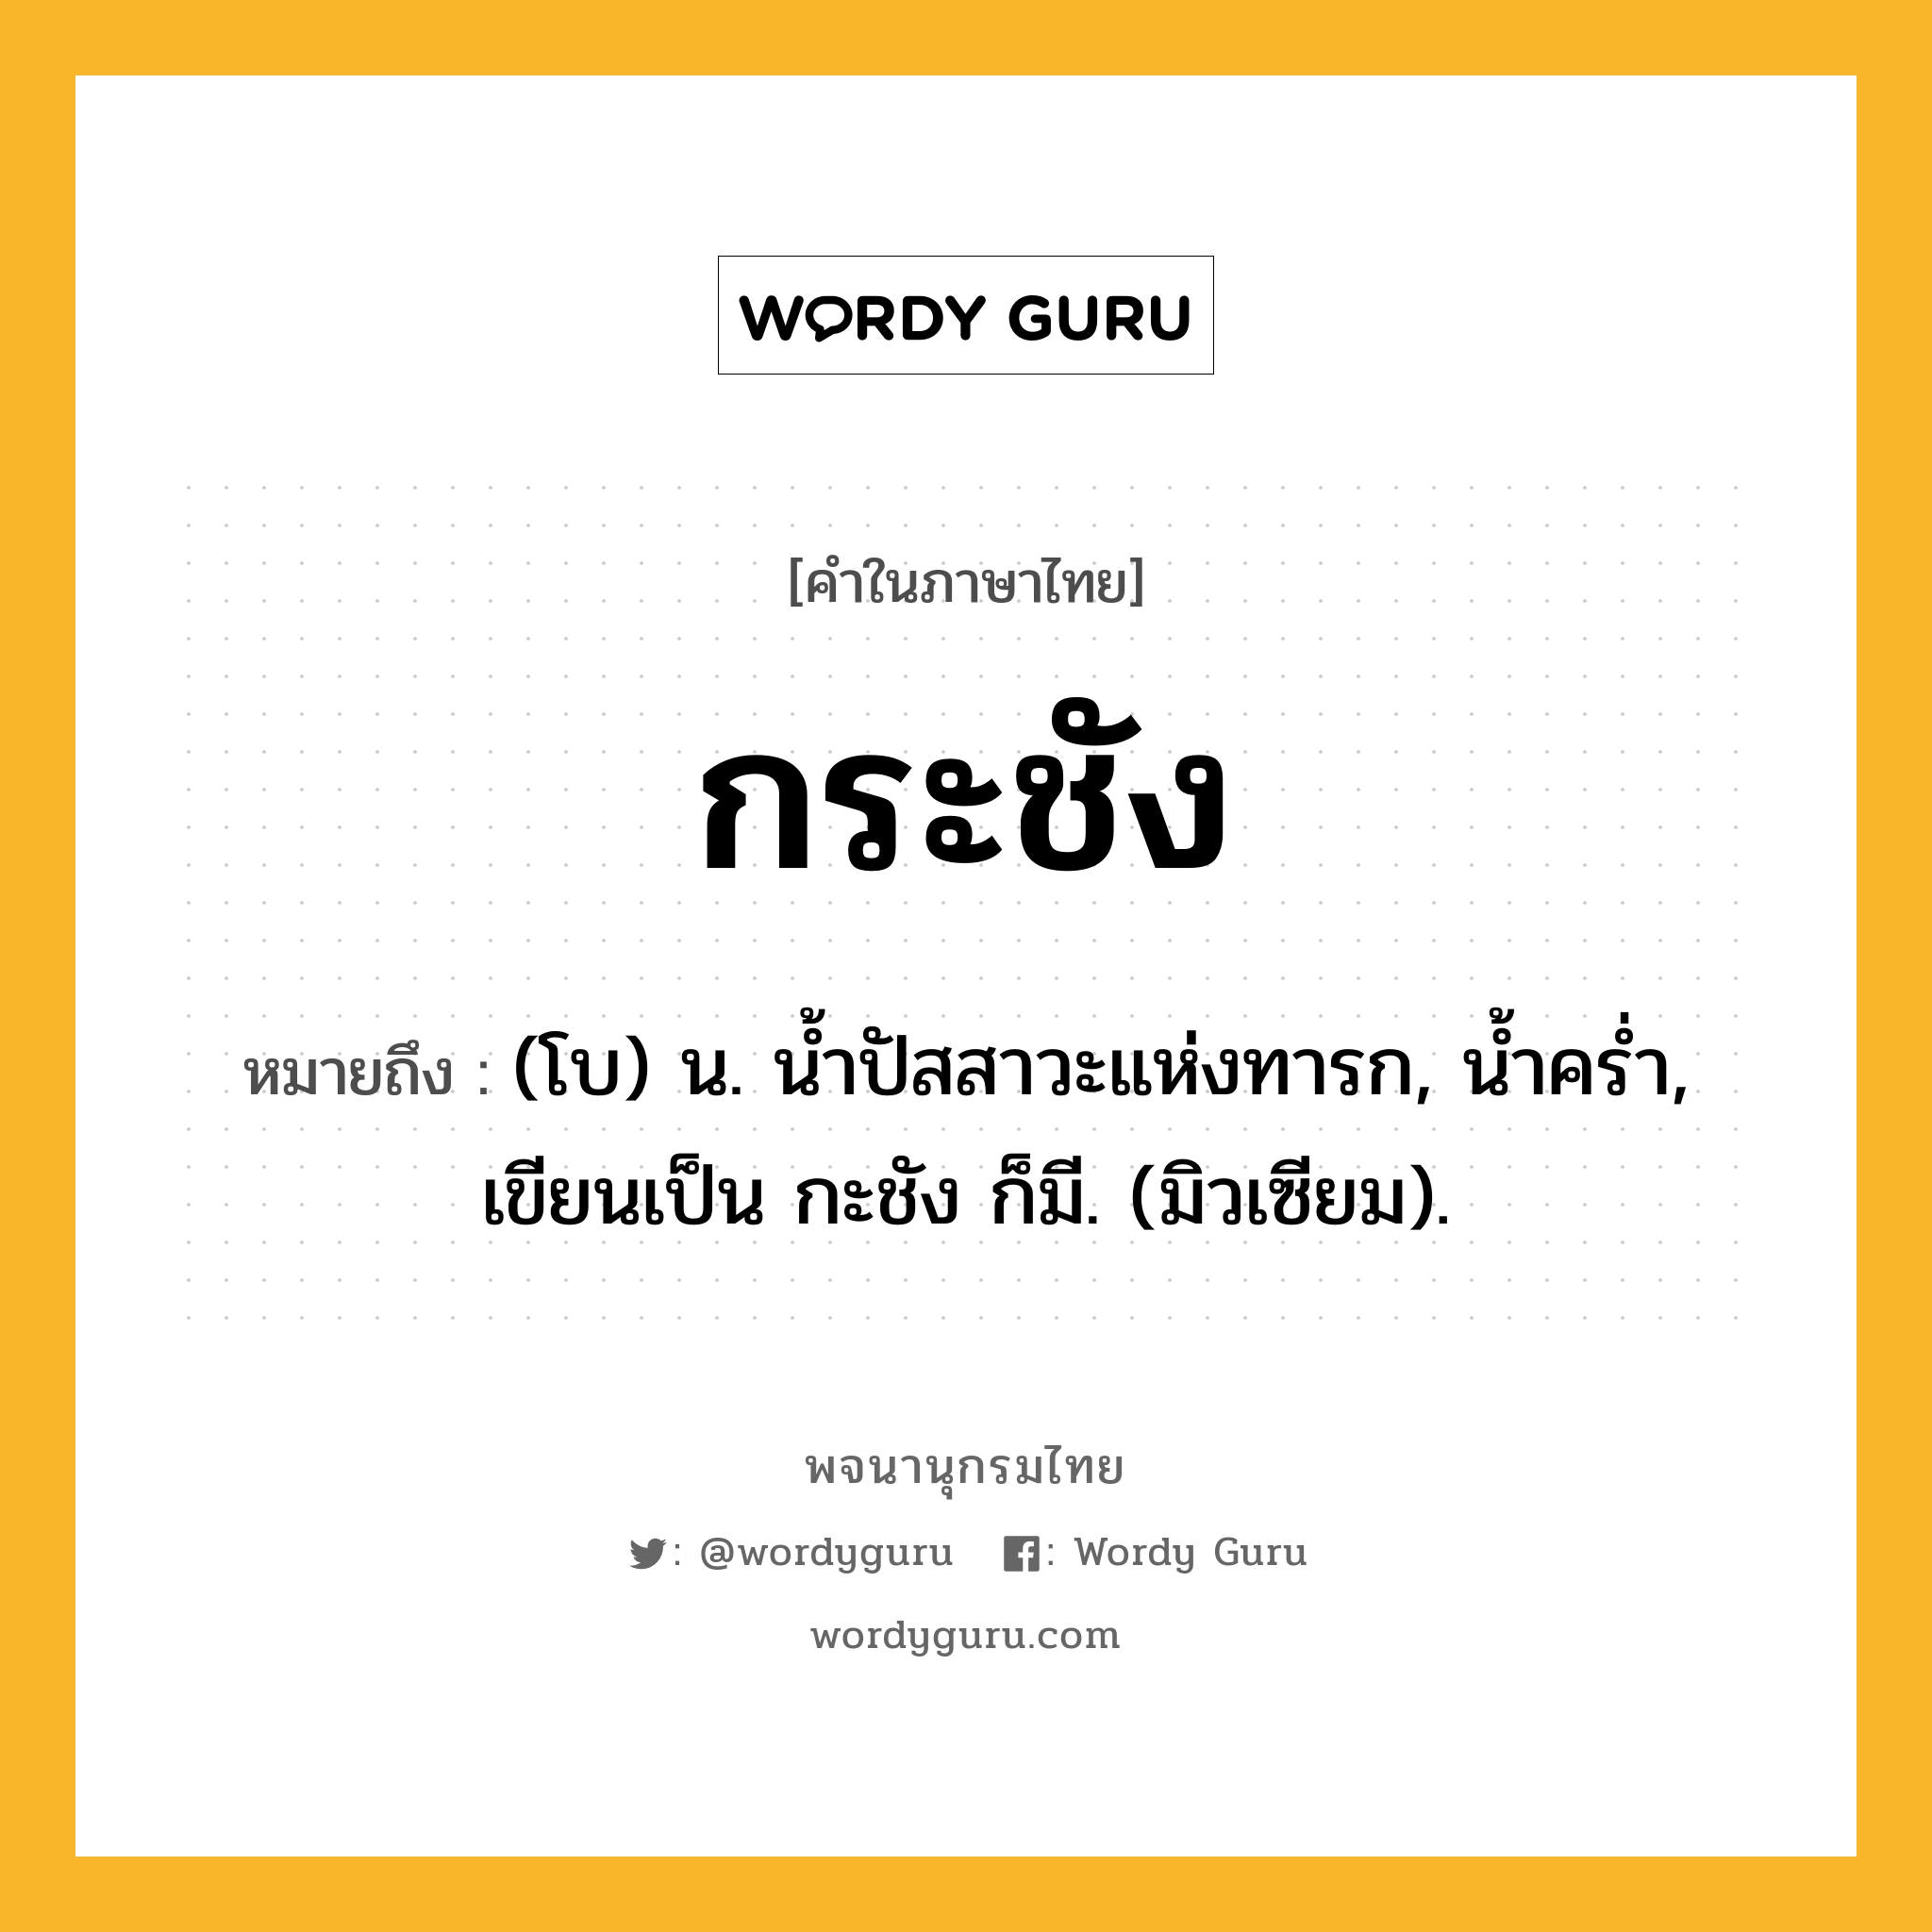 กระชัง ความหมาย หมายถึงอะไร?, คำในภาษาไทย กระชัง หมายถึง (โบ) น. นํ้าปัสสาวะแห่งทารก, นํ้าครํ่า, เขียนเป็น กะชัง ก็มี. (มิวเซียม).